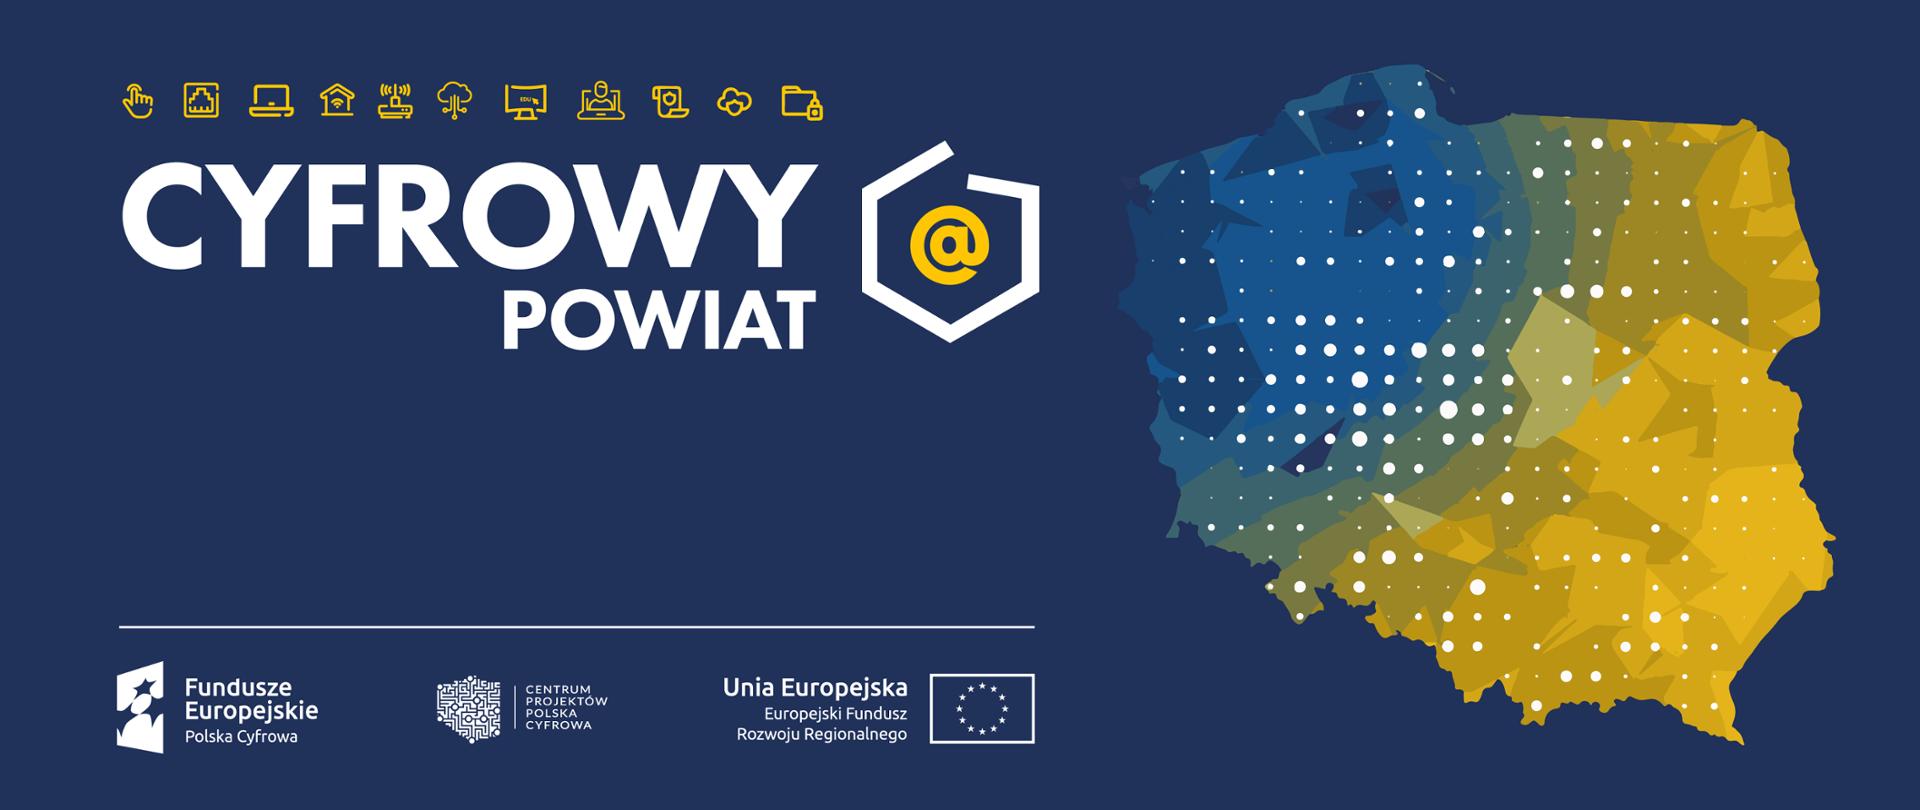 Baner Cyfrowy Powiat. Logociąg: Fundusze Europejskie Polska Cyfrowa, Centrum Projektów Polska Cyfrowa oraz Unia Europejska Europejski Fundusz Rozwoju Regionalnego.